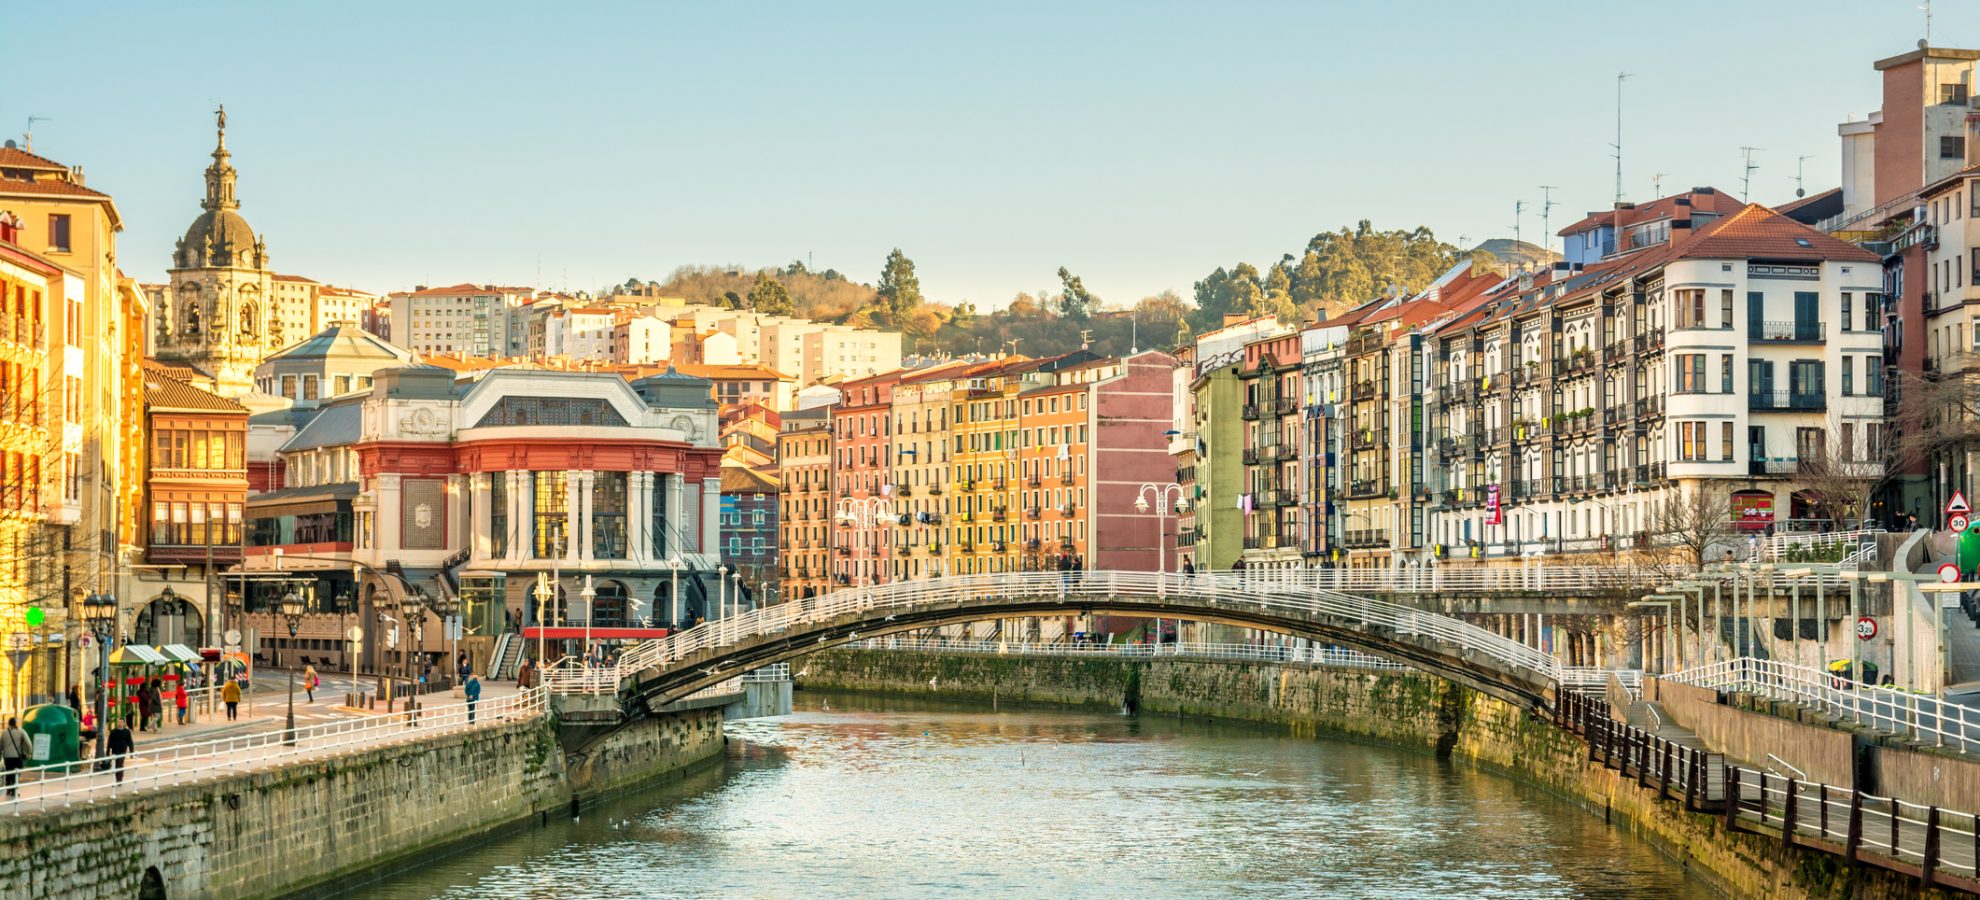 Bilbao - Rivieroever op zonnige dag